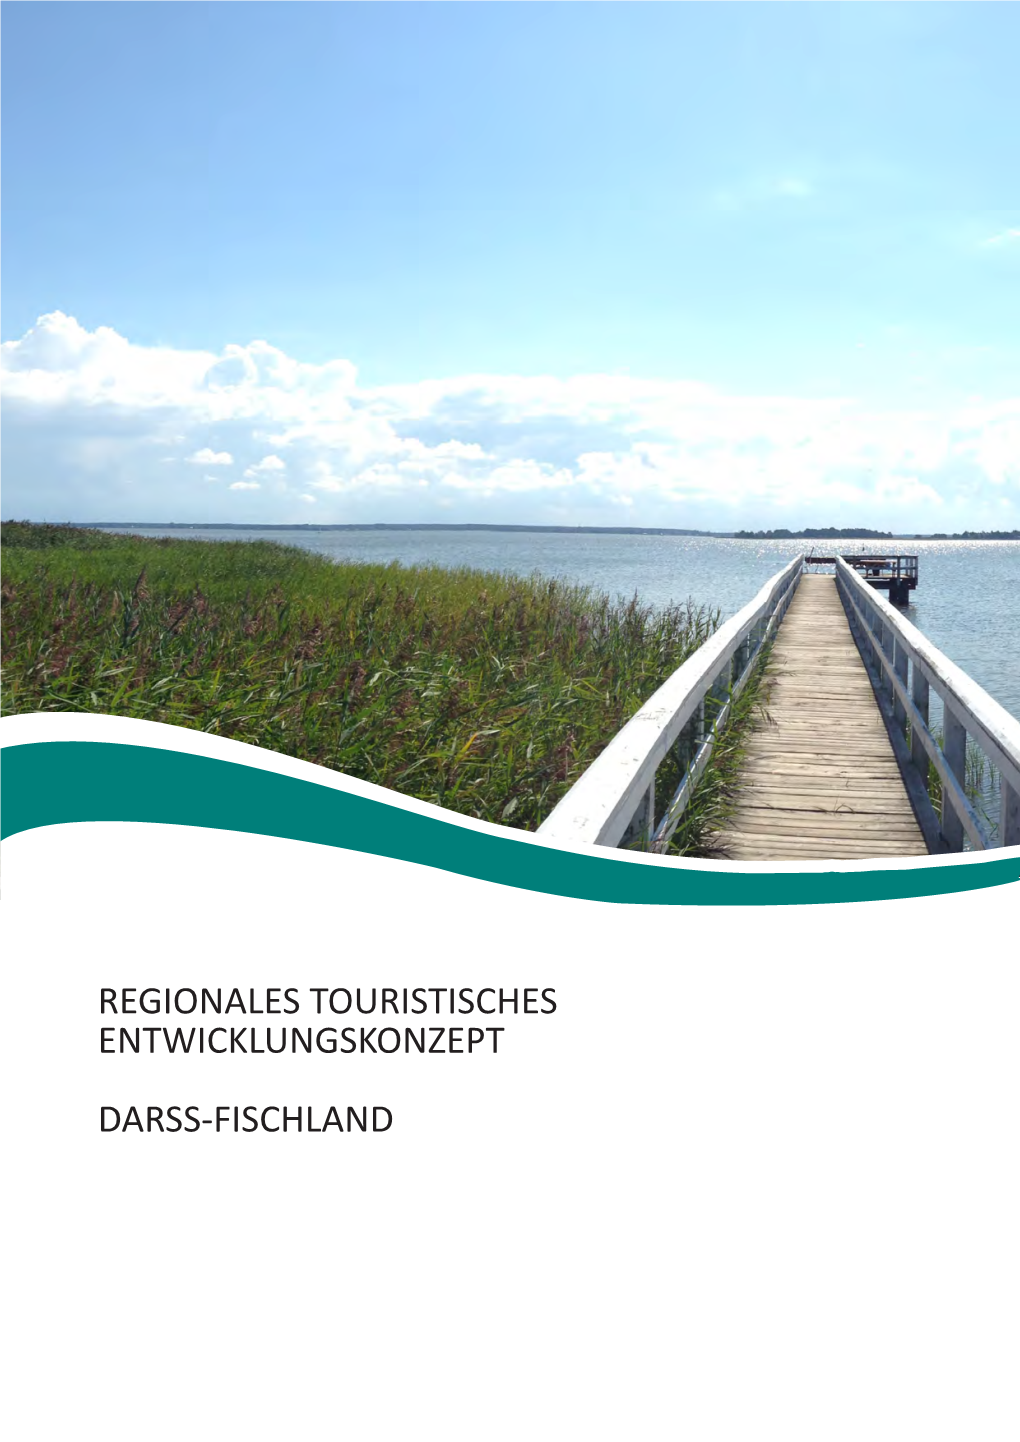 Regionales Touristisches Entwicklungskonzept Darss-Fischland